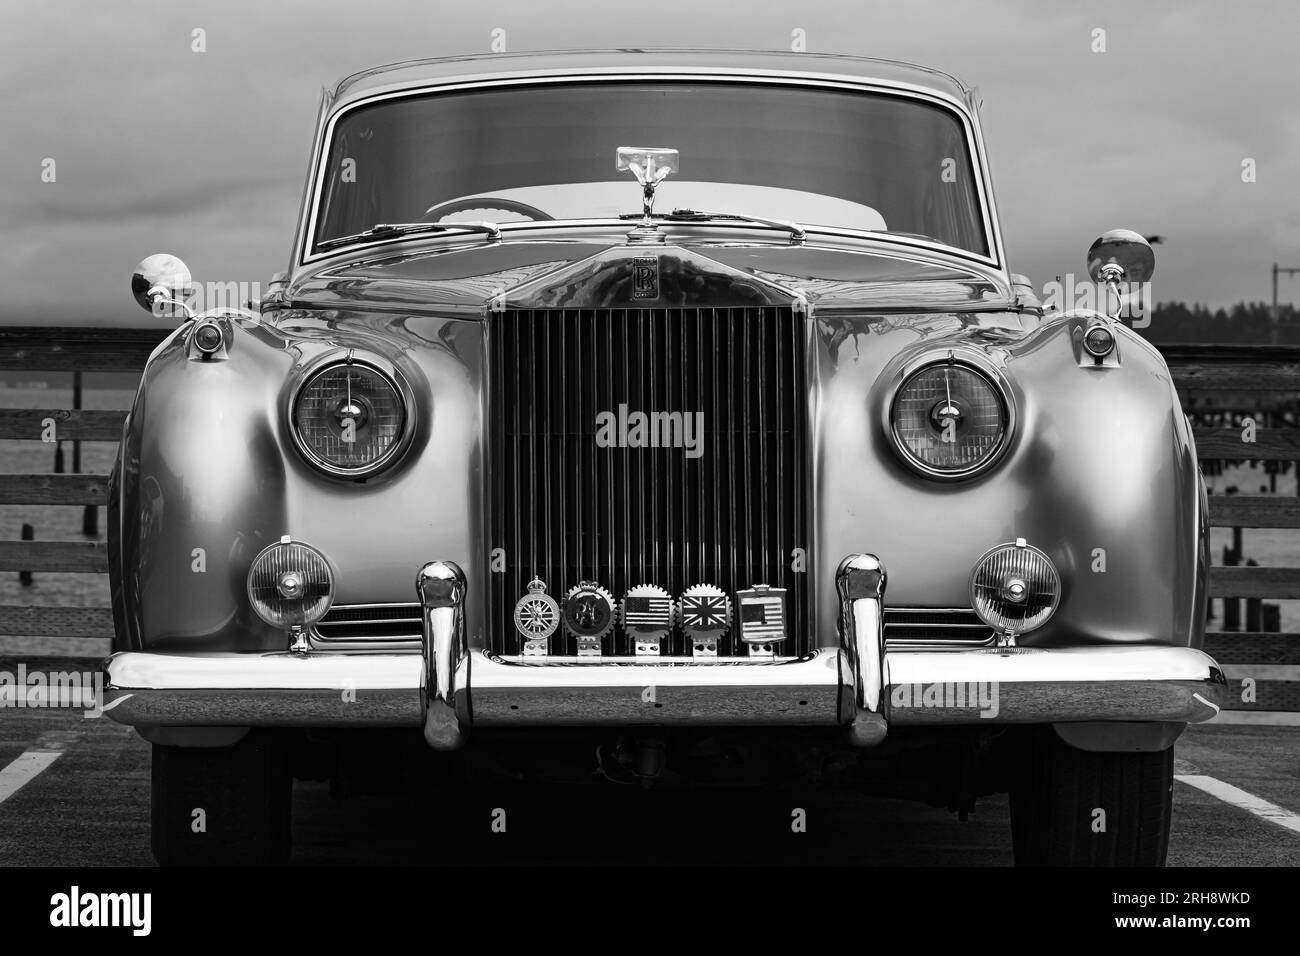 Vue de face d'une voiture de luxe vintage Rolls-Royce. Rolls Royce Silver Cloud Series voiture classique était le modèle principal de la gamme de voitures Rolls-Royce à partir d'avril Banque D'Images